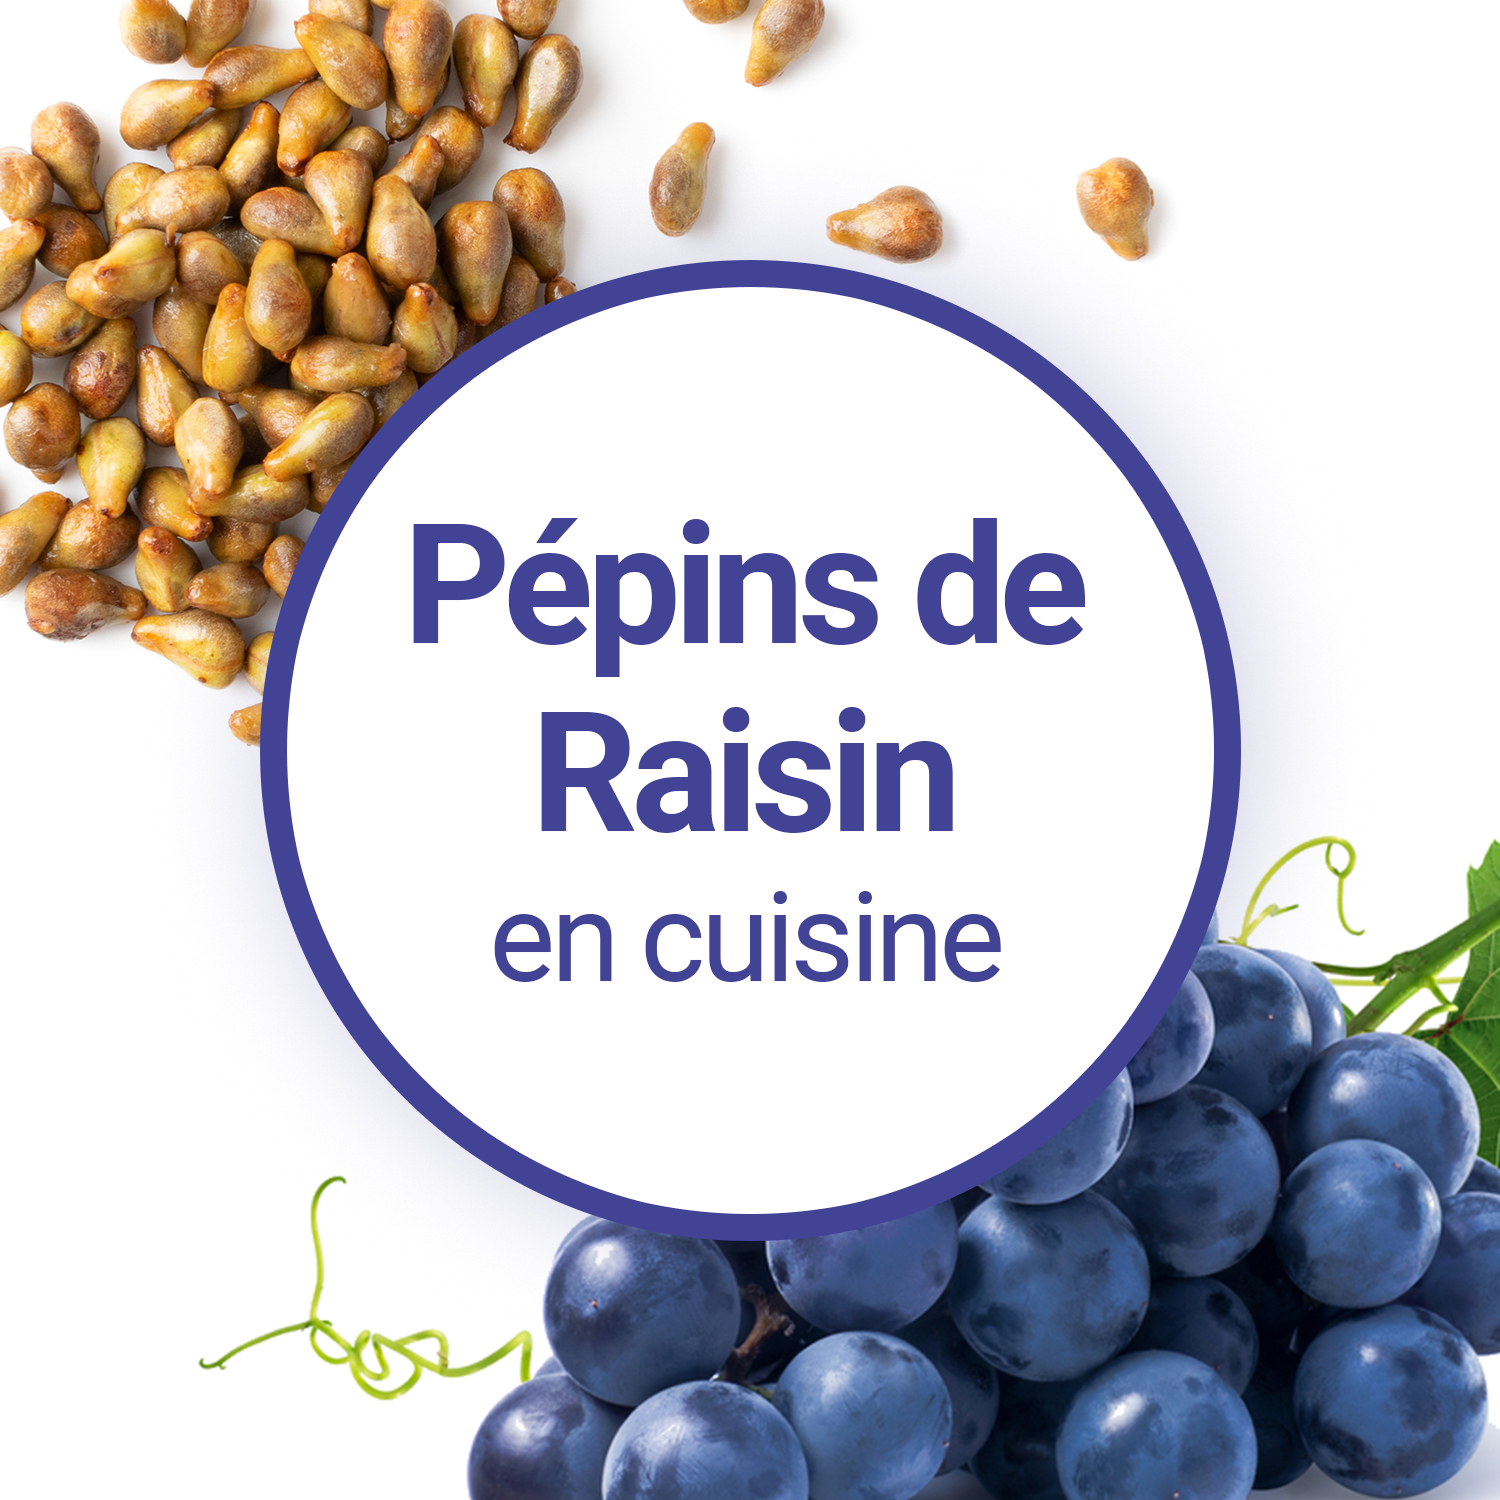 Pourquoi utiliser l'huile de Pépins de Raisin en cuisine ?